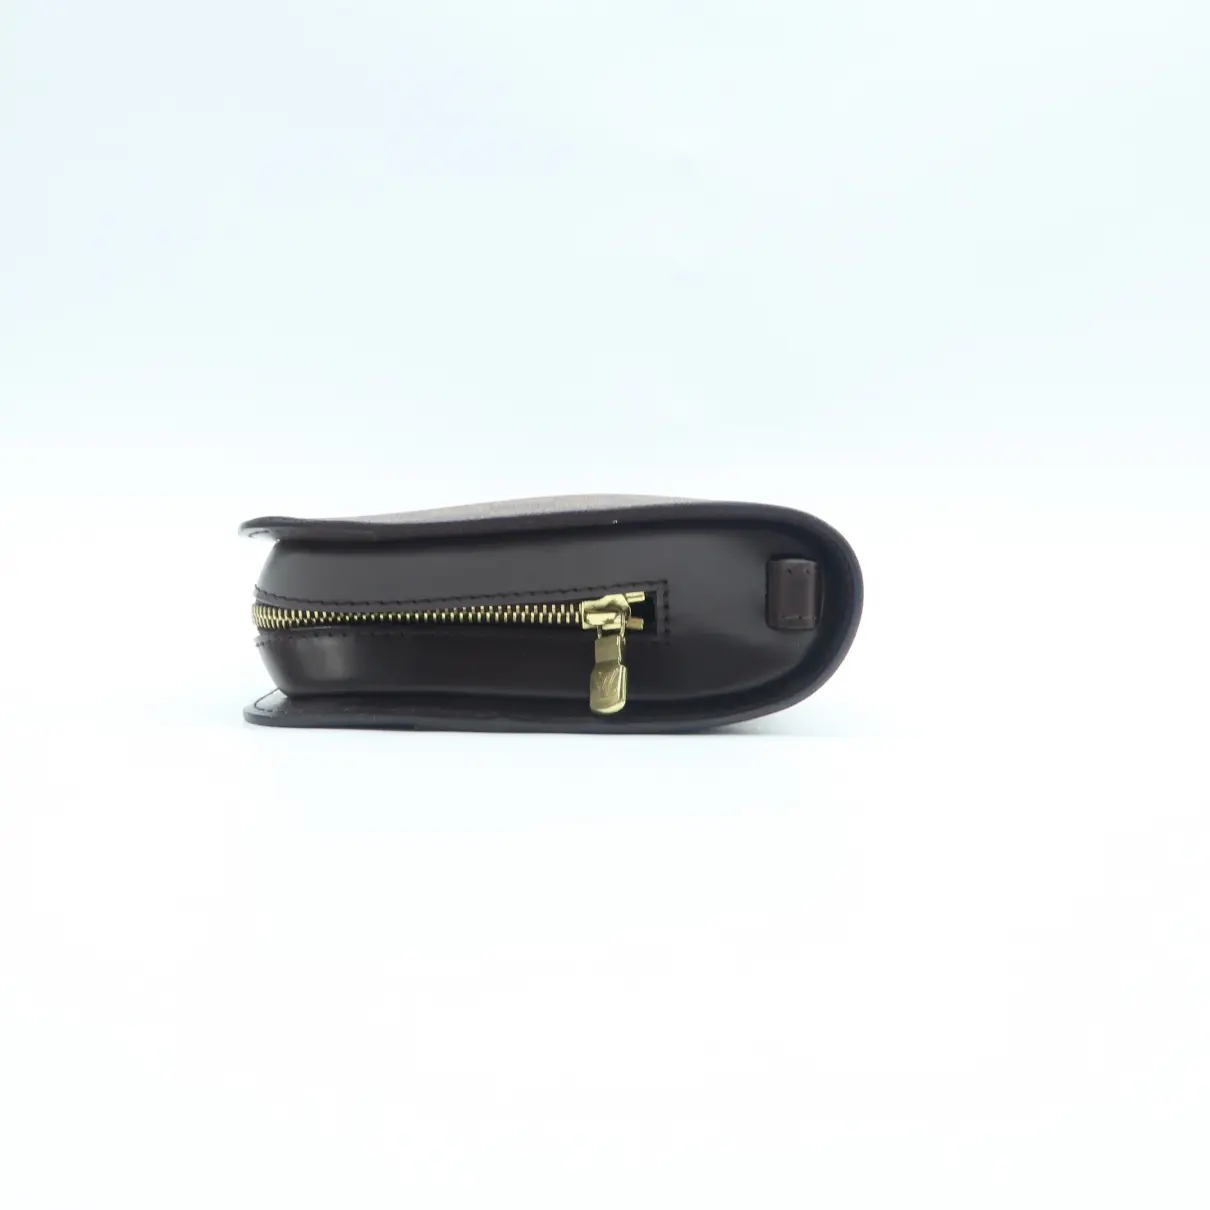 Saint-Louis leather clutch bag Louis Vuitton